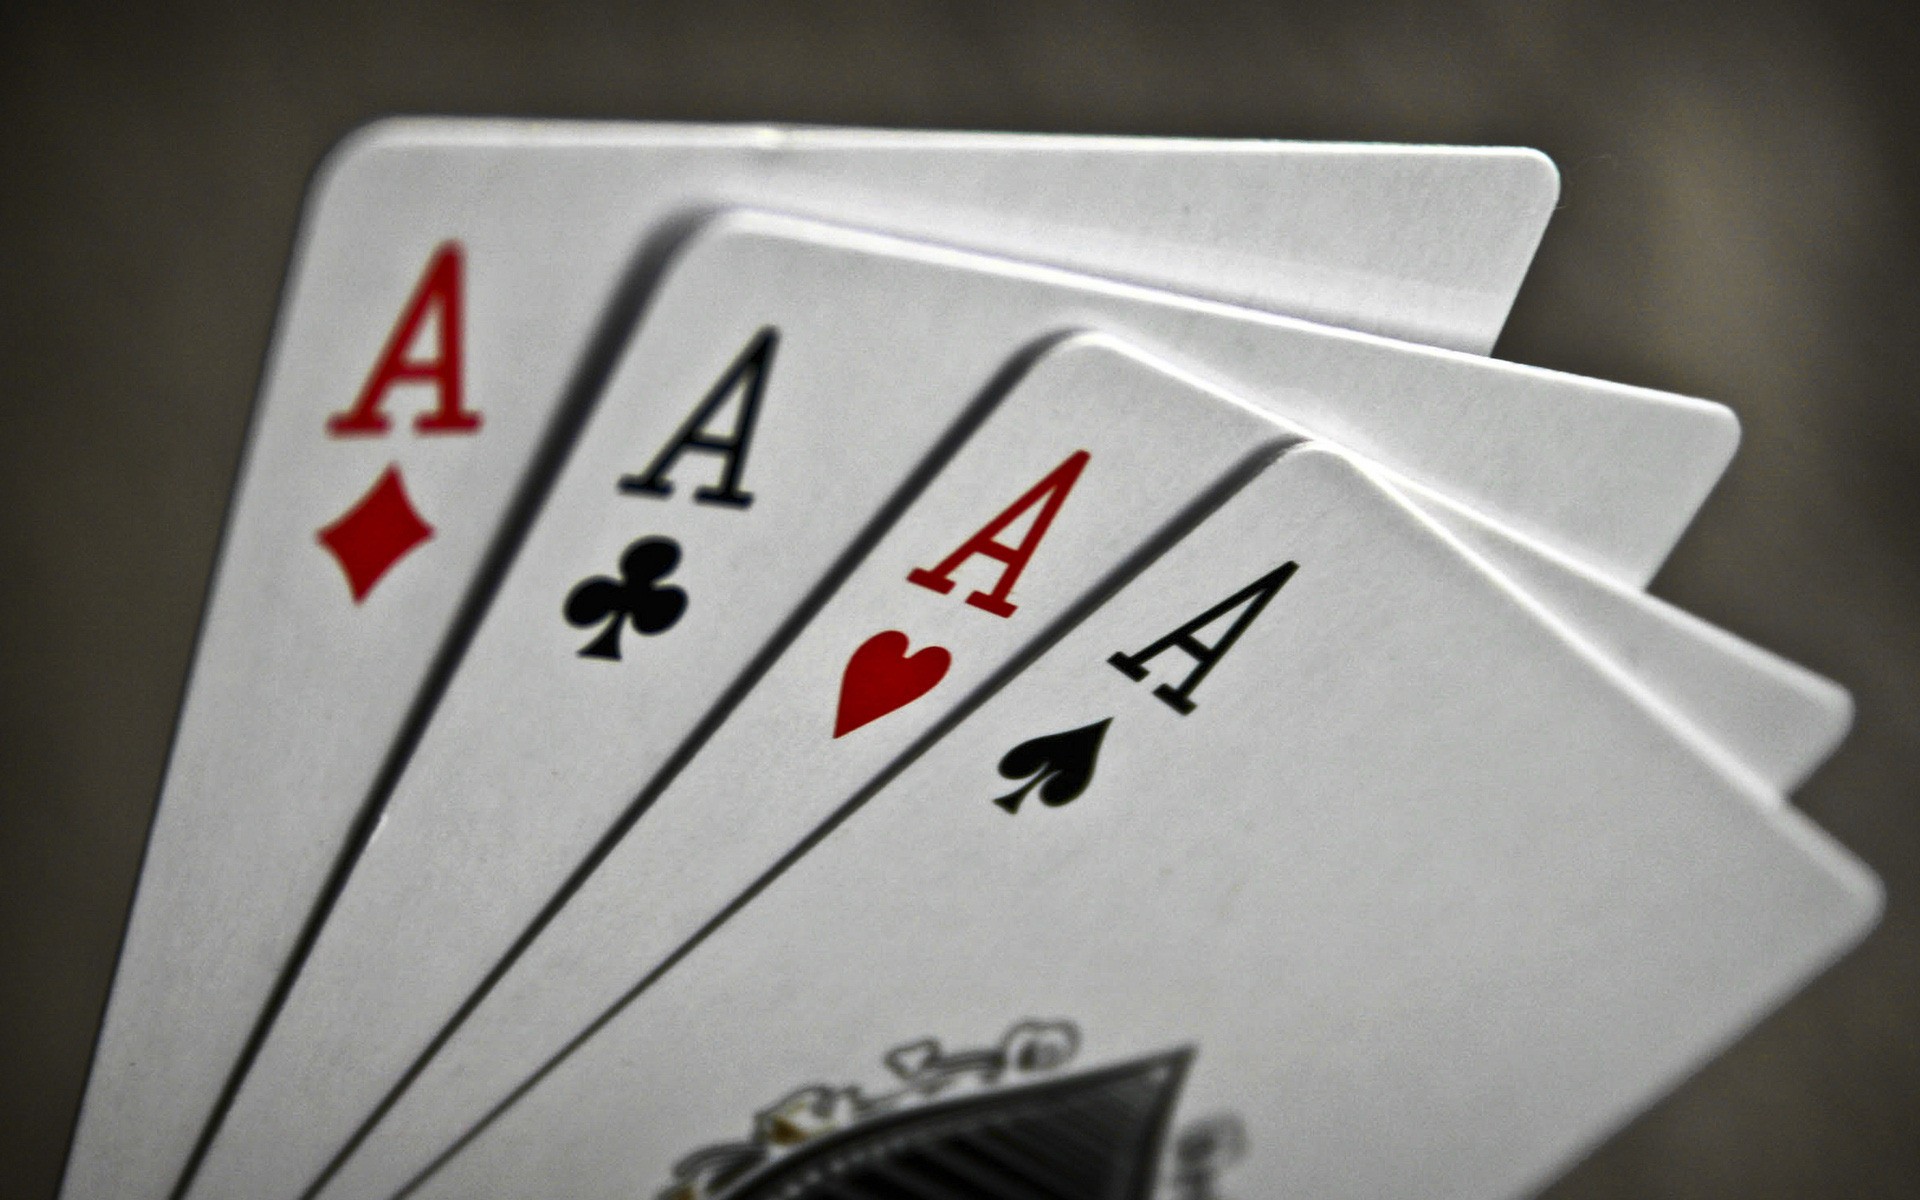 карты, Ace, макро, игральные карты - обои на рабочий стол